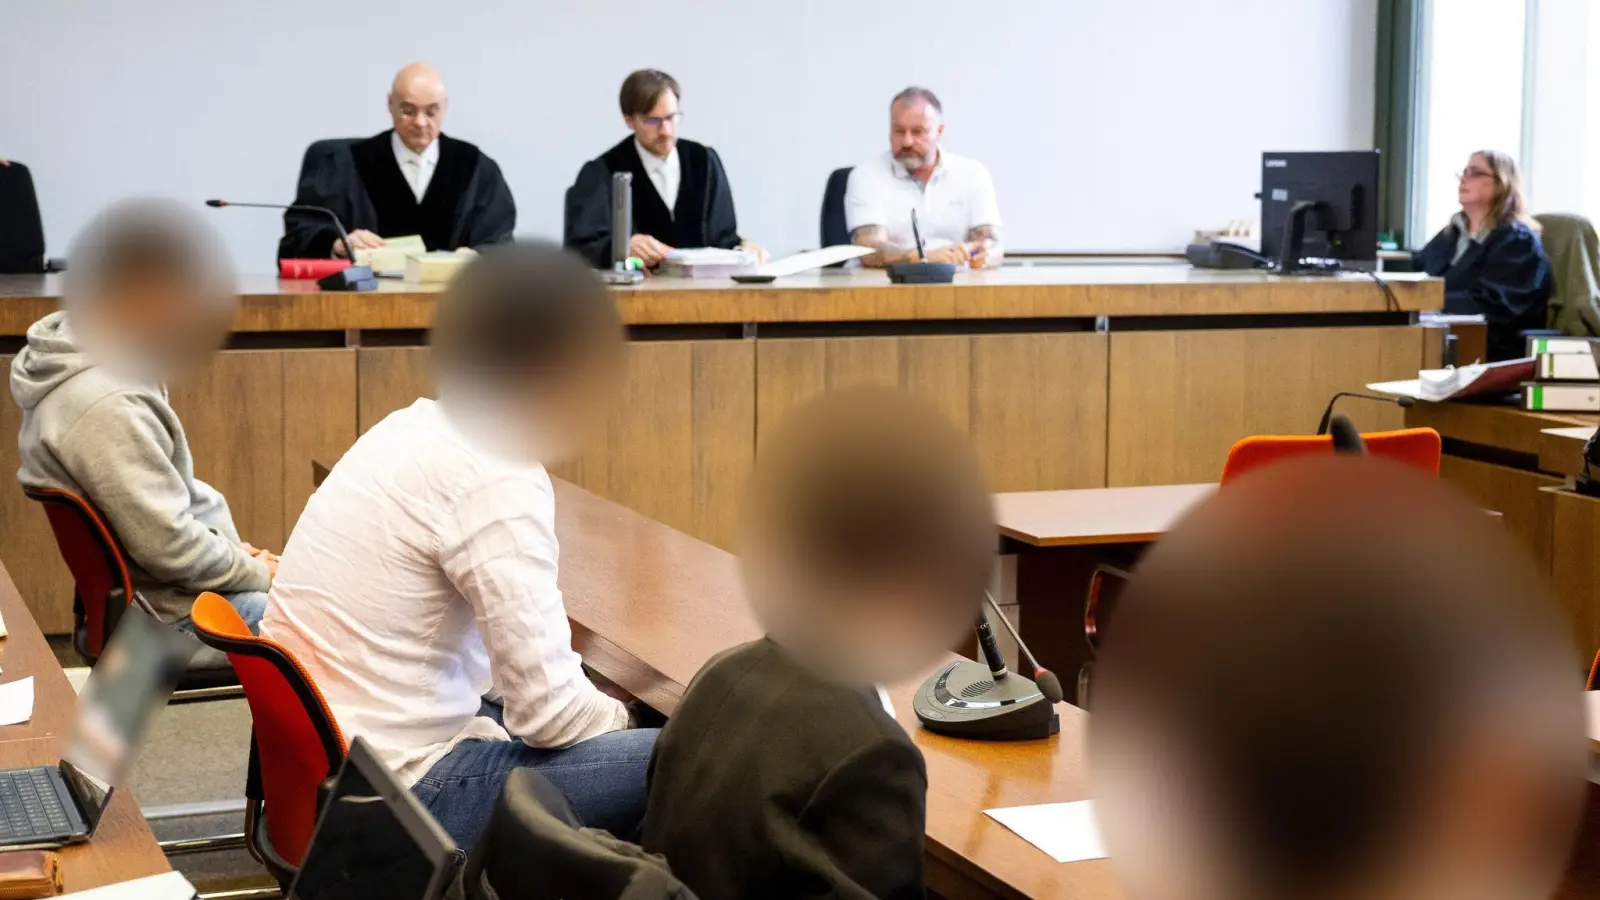 Vier Angeklagte sitzen zum Prozessauftakt wegen Raub und vorsätzlicher Körperverletzung im Gerichtssaal. (Foto: Lennart Preiss/dpa)